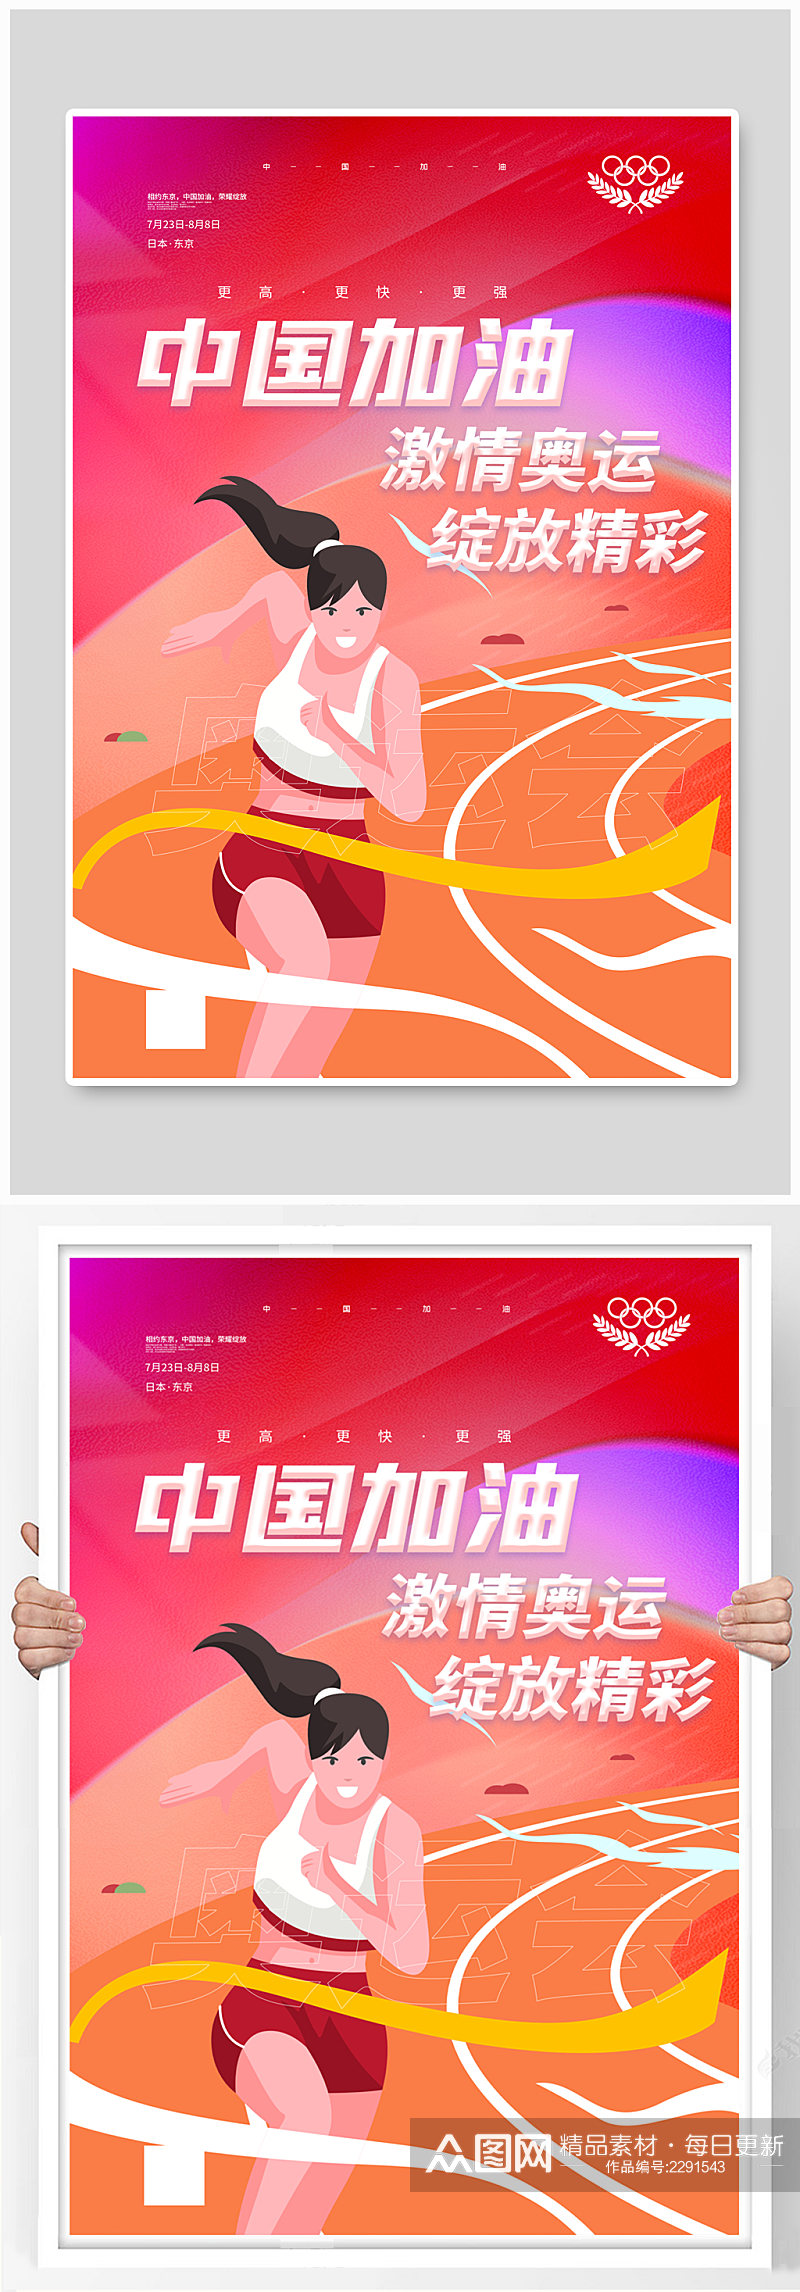 中国加油东京奥运会宣传海报素材